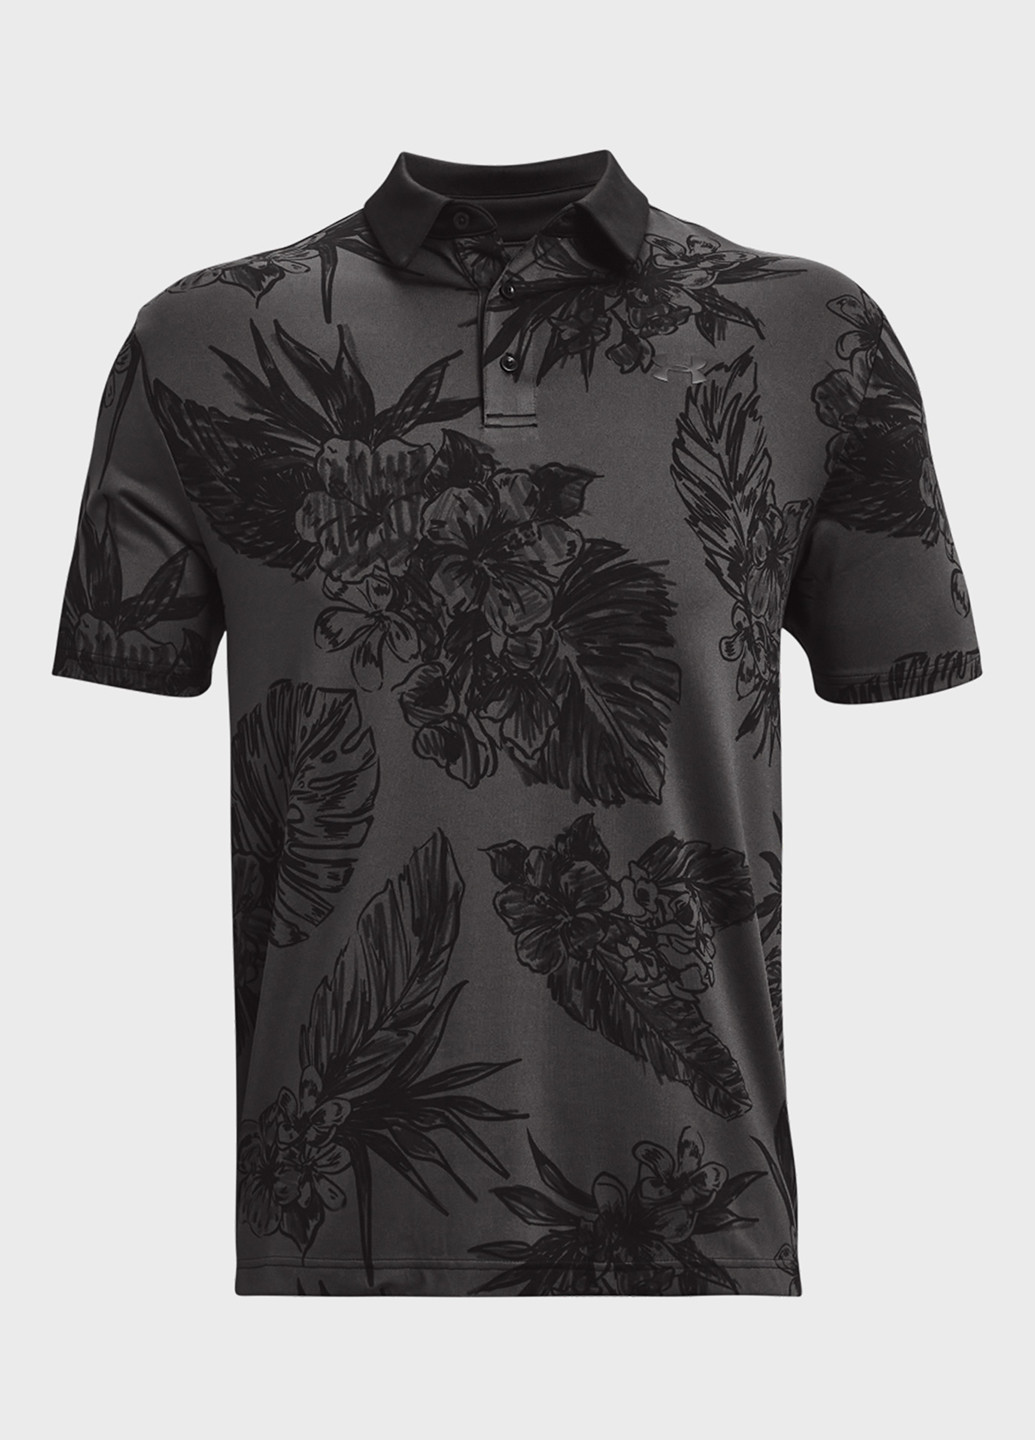 Темно-серая футболка-поло для мужчин Under Armour с цветочным принтом